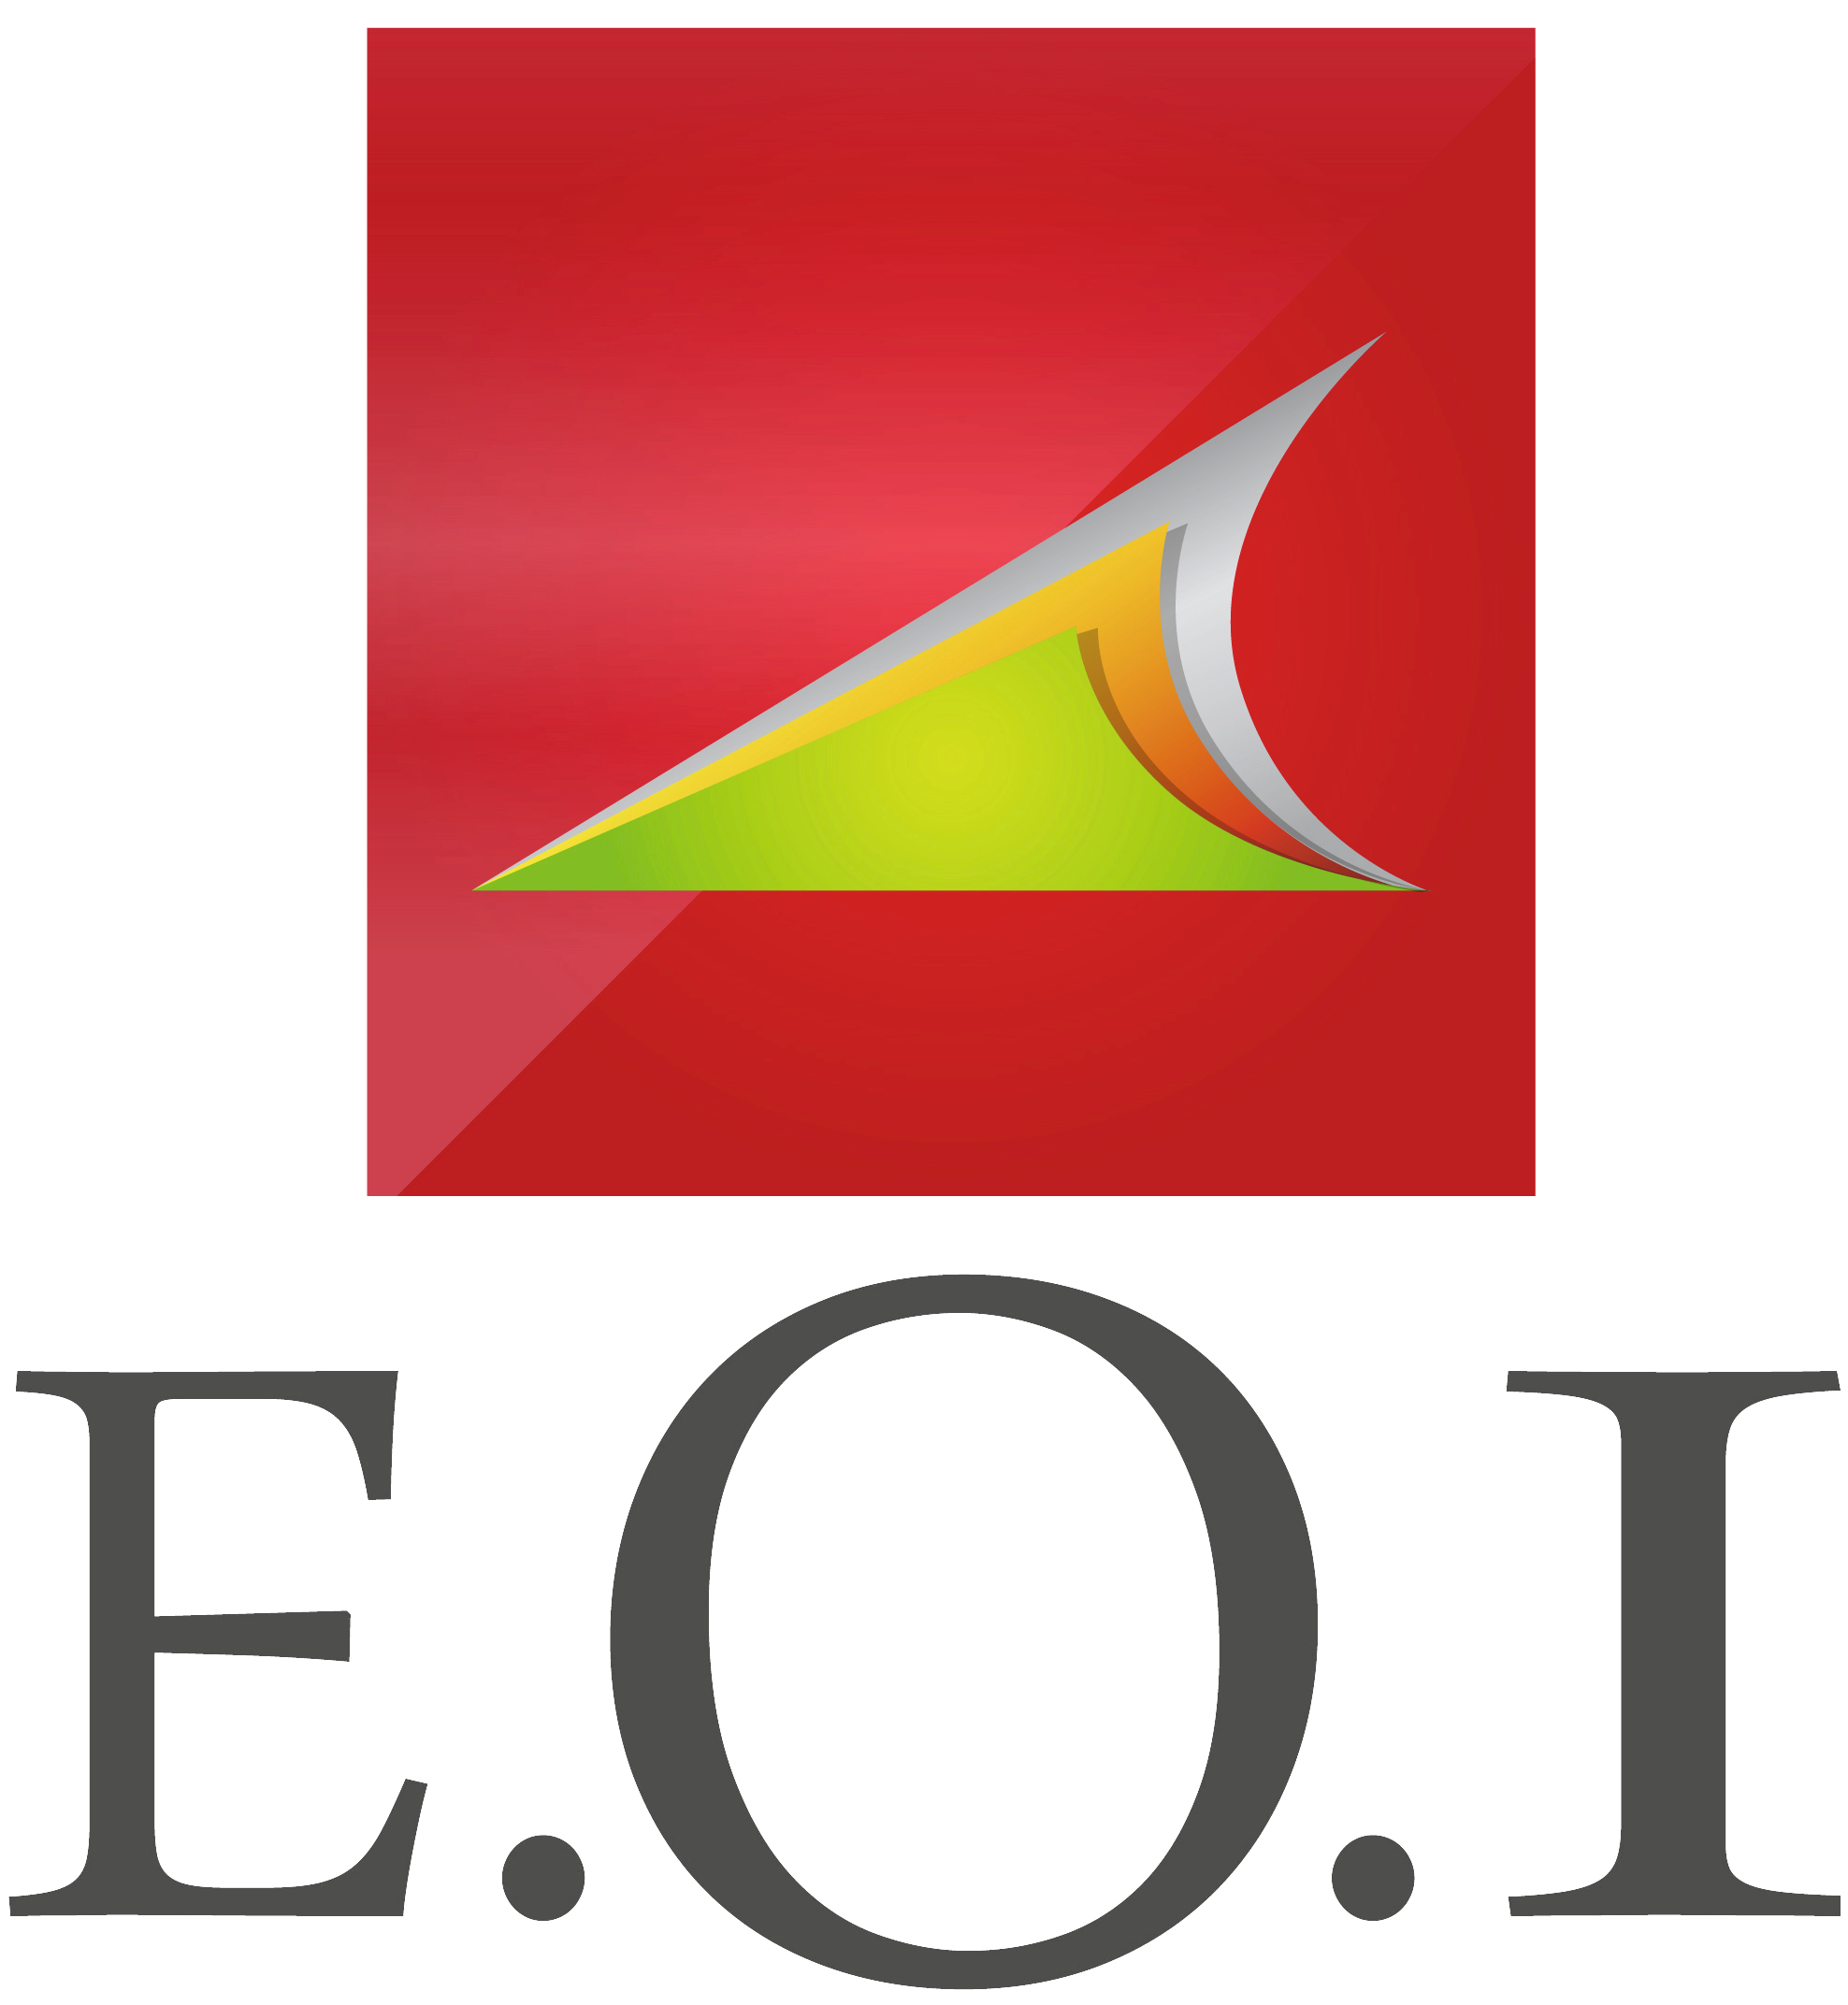 Logo EOI